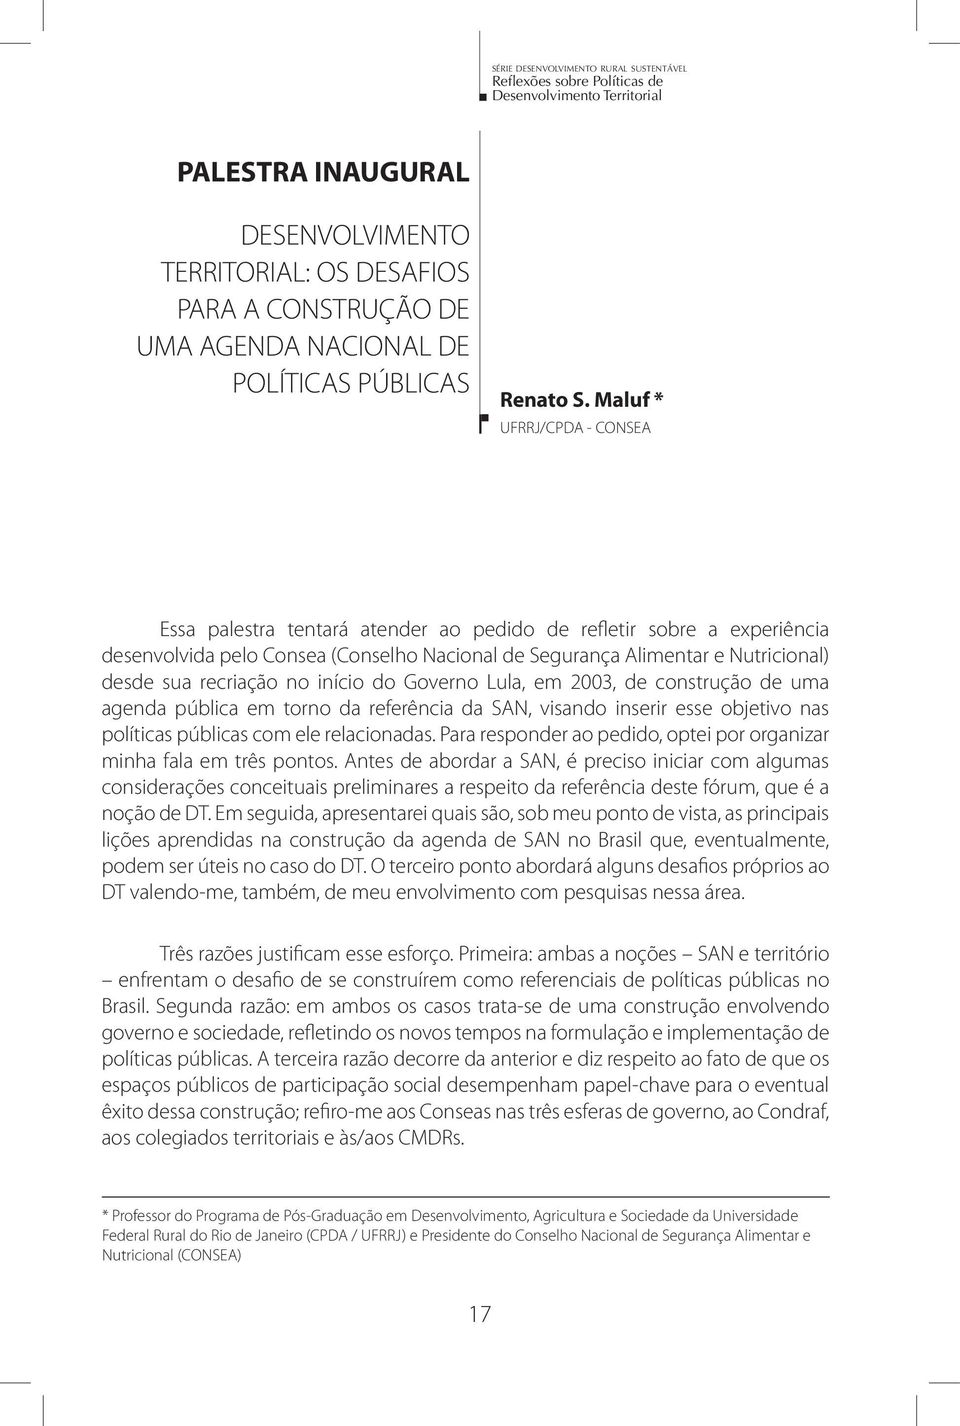 recriação no início do Governo Lula, em 2003, de construção de uma agenda pública em torno da referência da SAN, visando inserir esse objetivo nas políticas públicas com ele relacionadas.